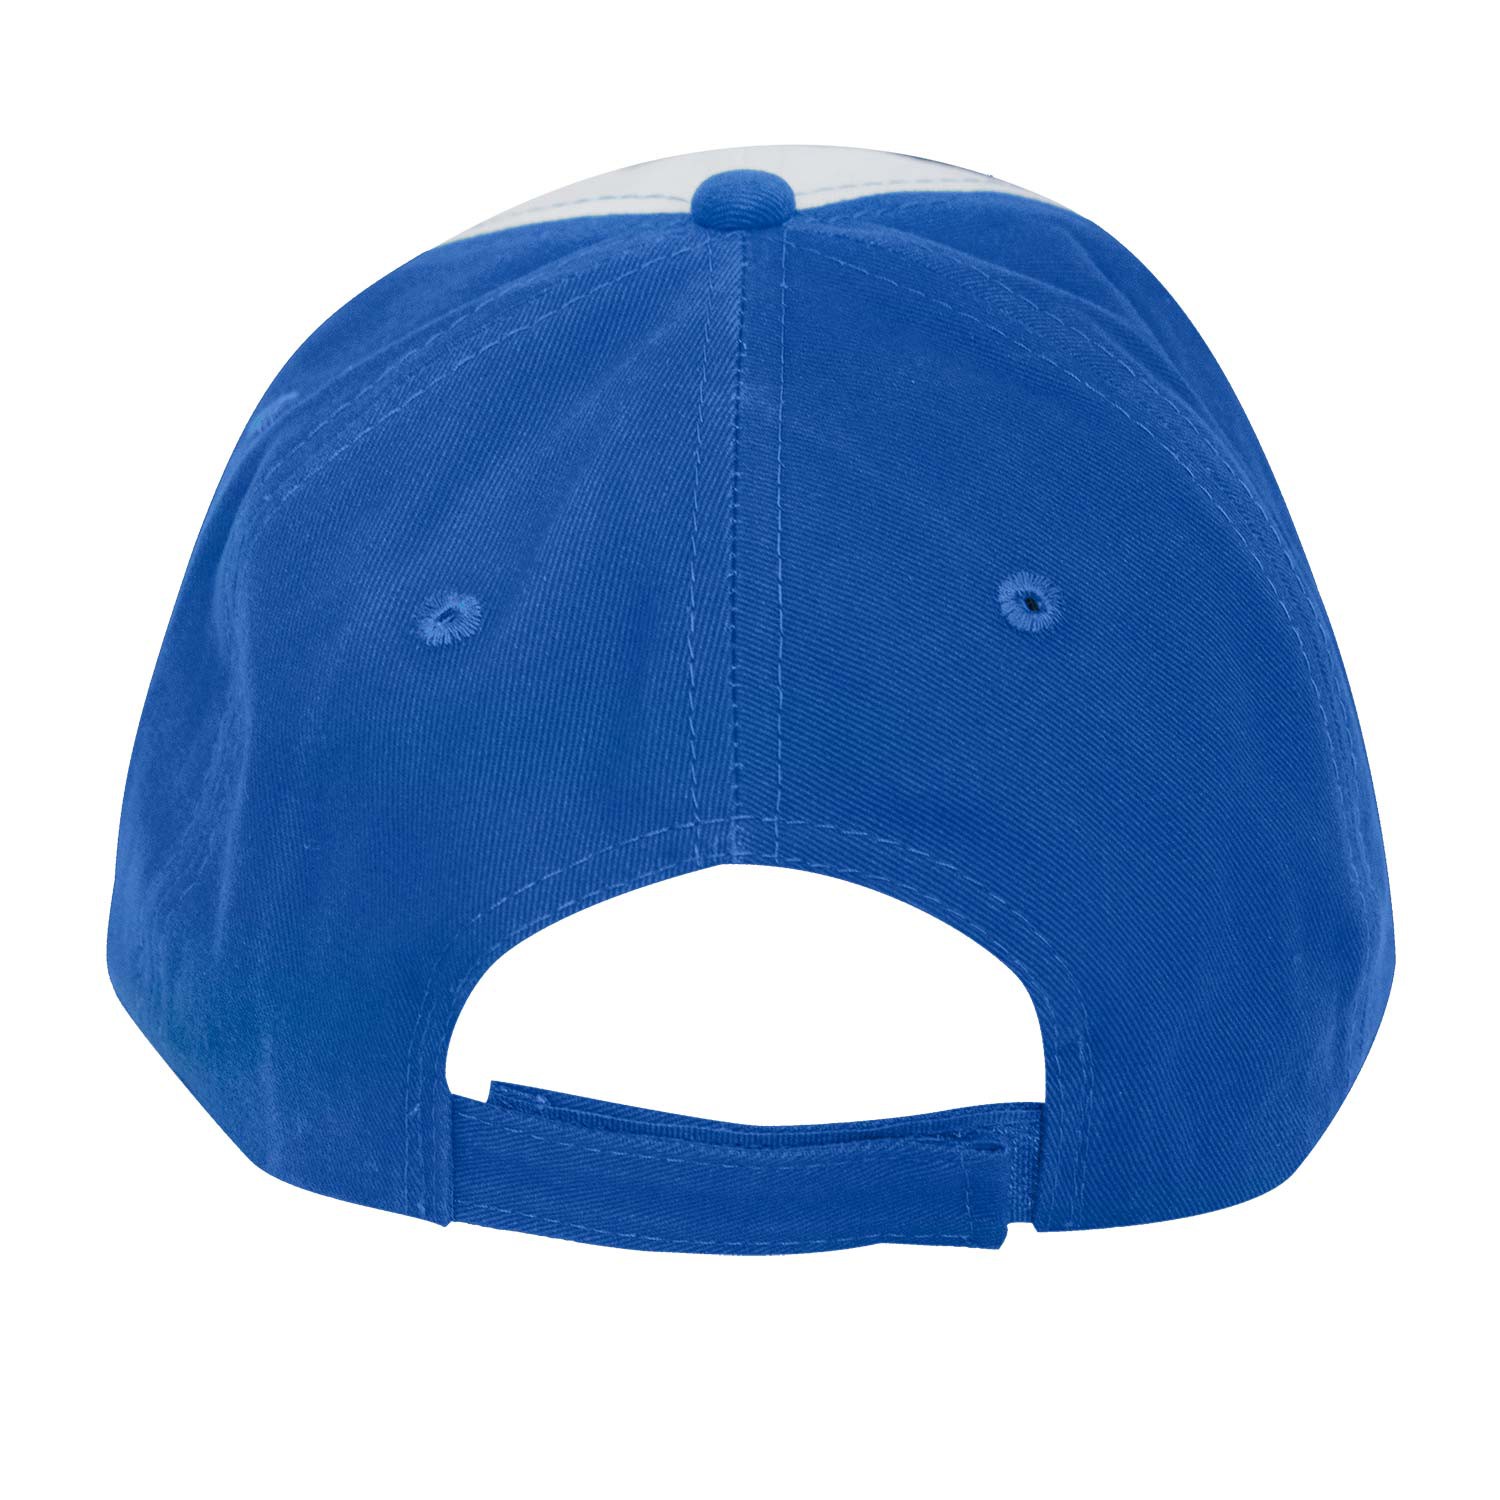 Bud Light Blue & White Baseball Hat